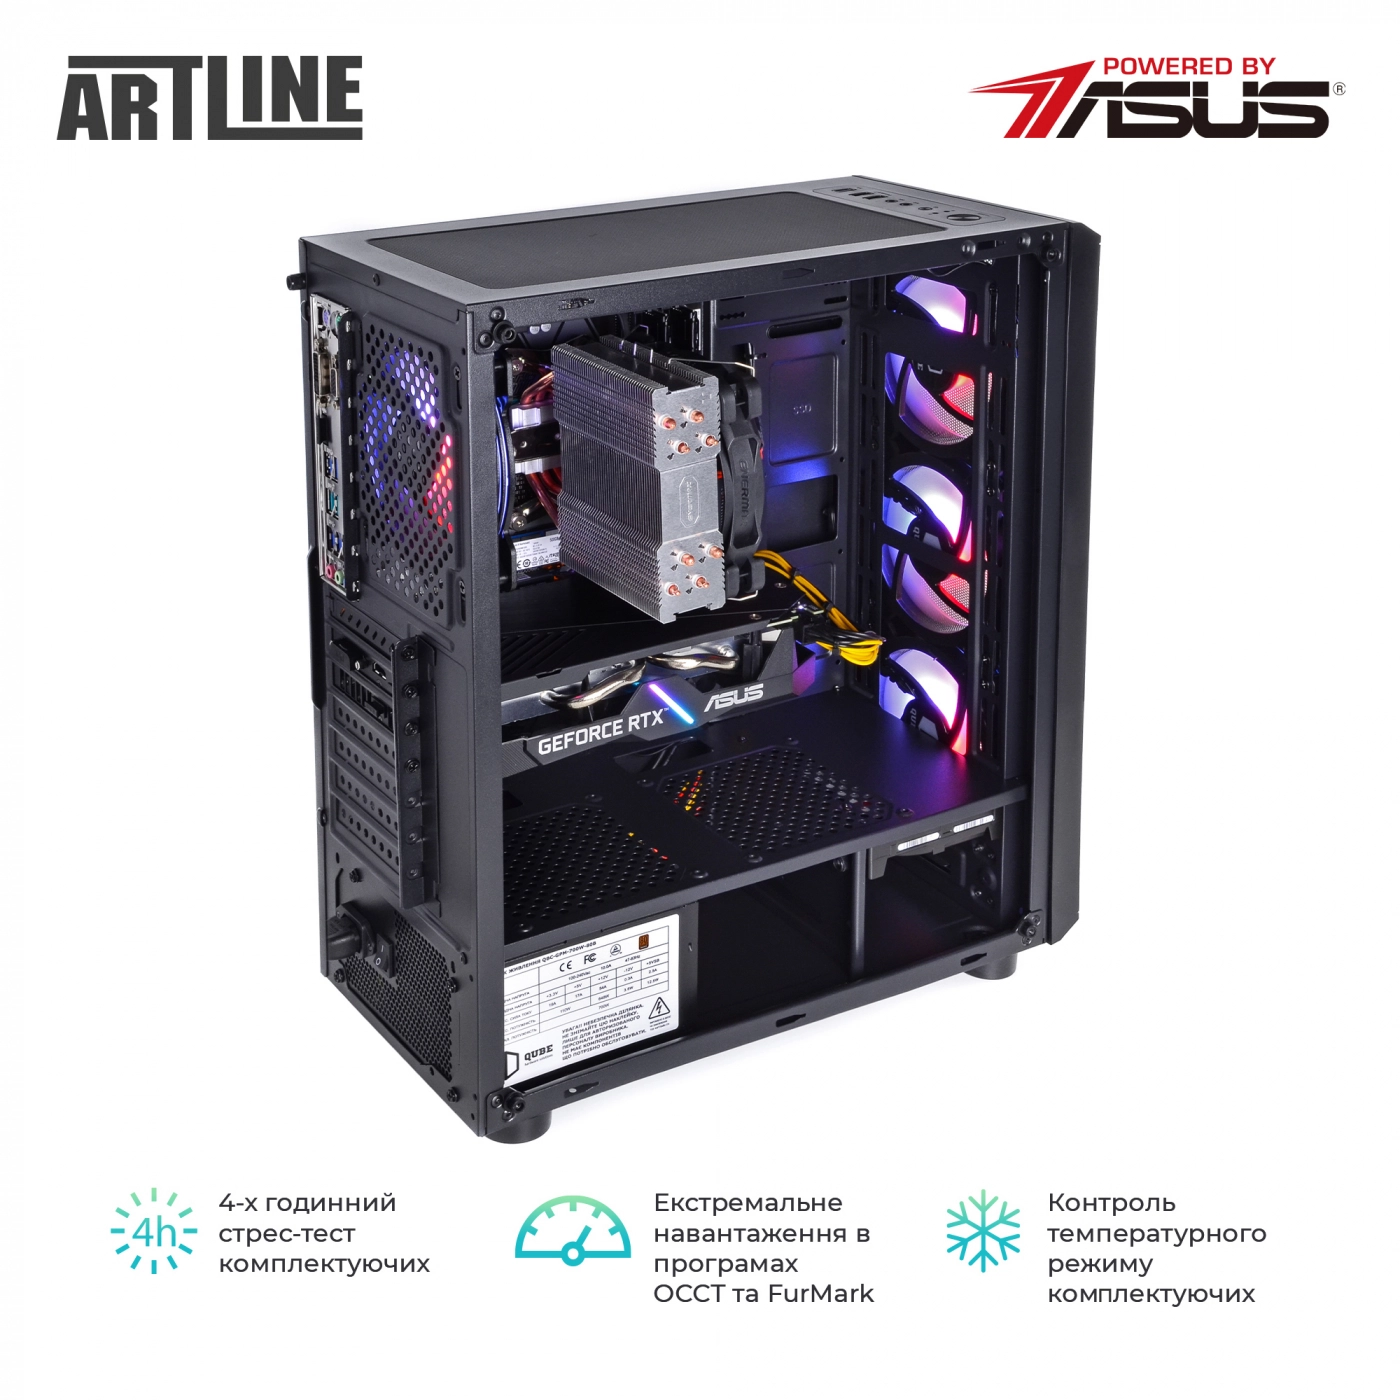 Купить Компьютер ARTLINE Gaming X53v34 - фото 8